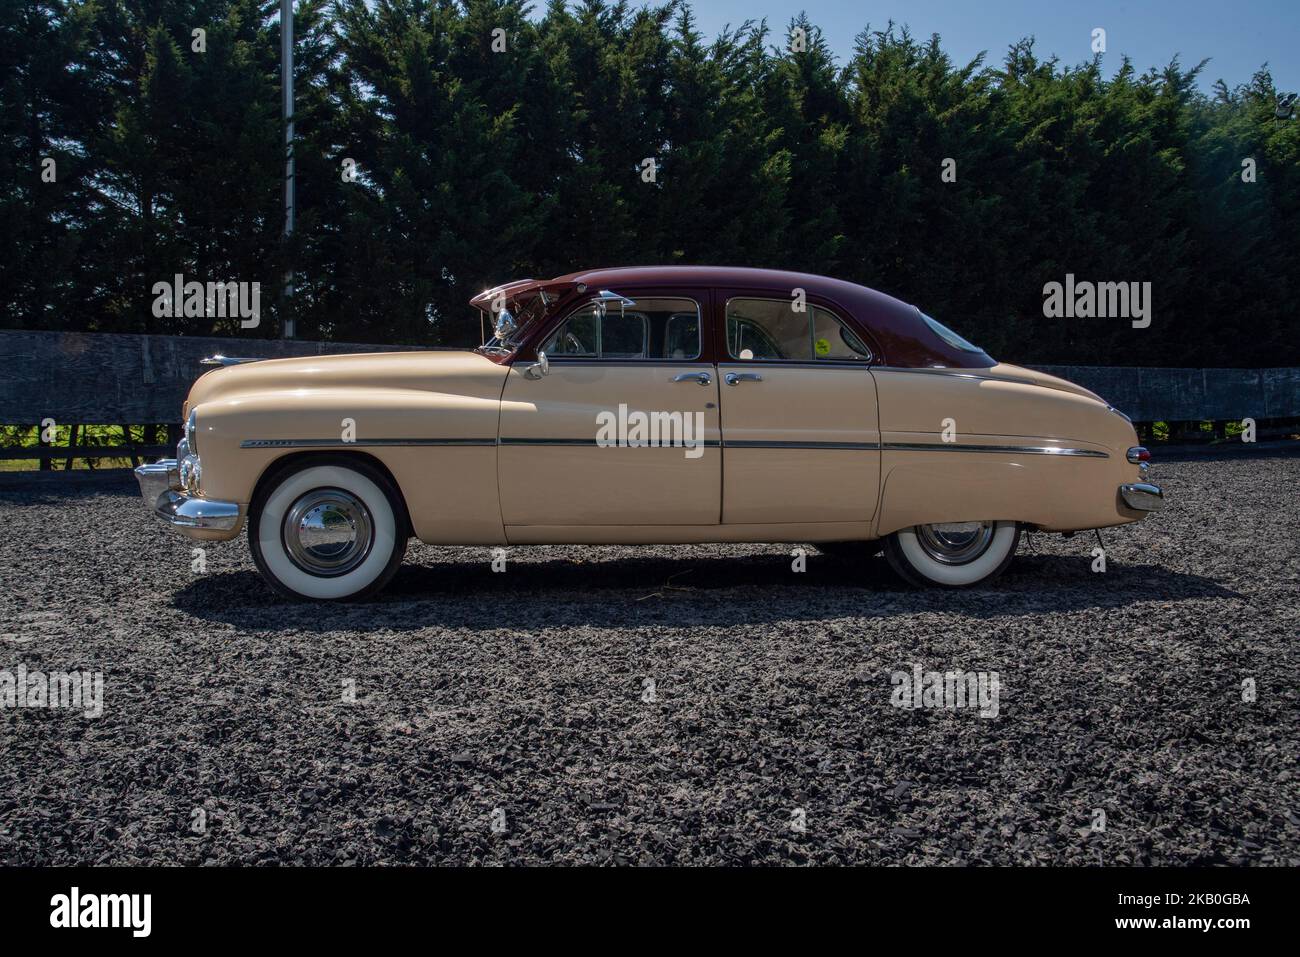 1949 Mercury 4 door sedan, classic American car Stock Photo